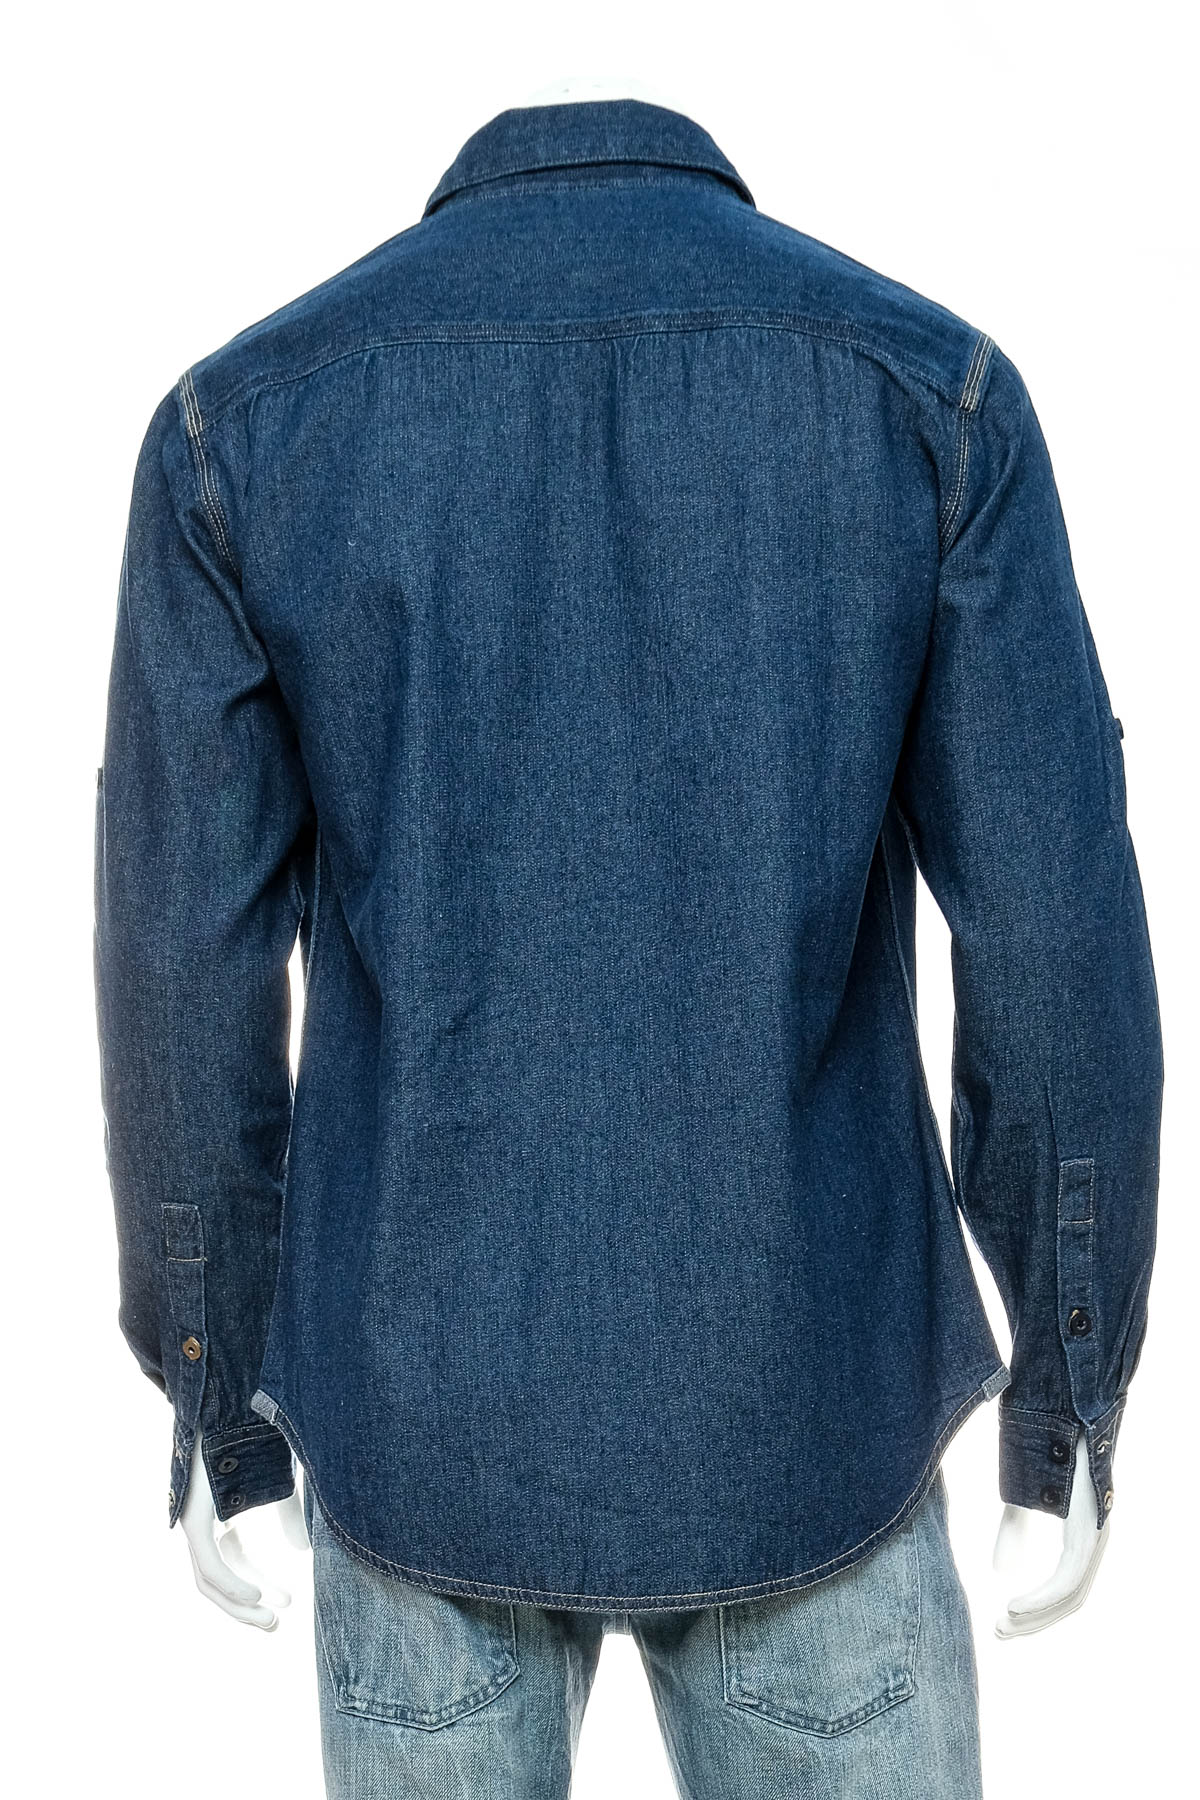 Ανδρικό τζιν πουκάμισο - B&C Collection - 1